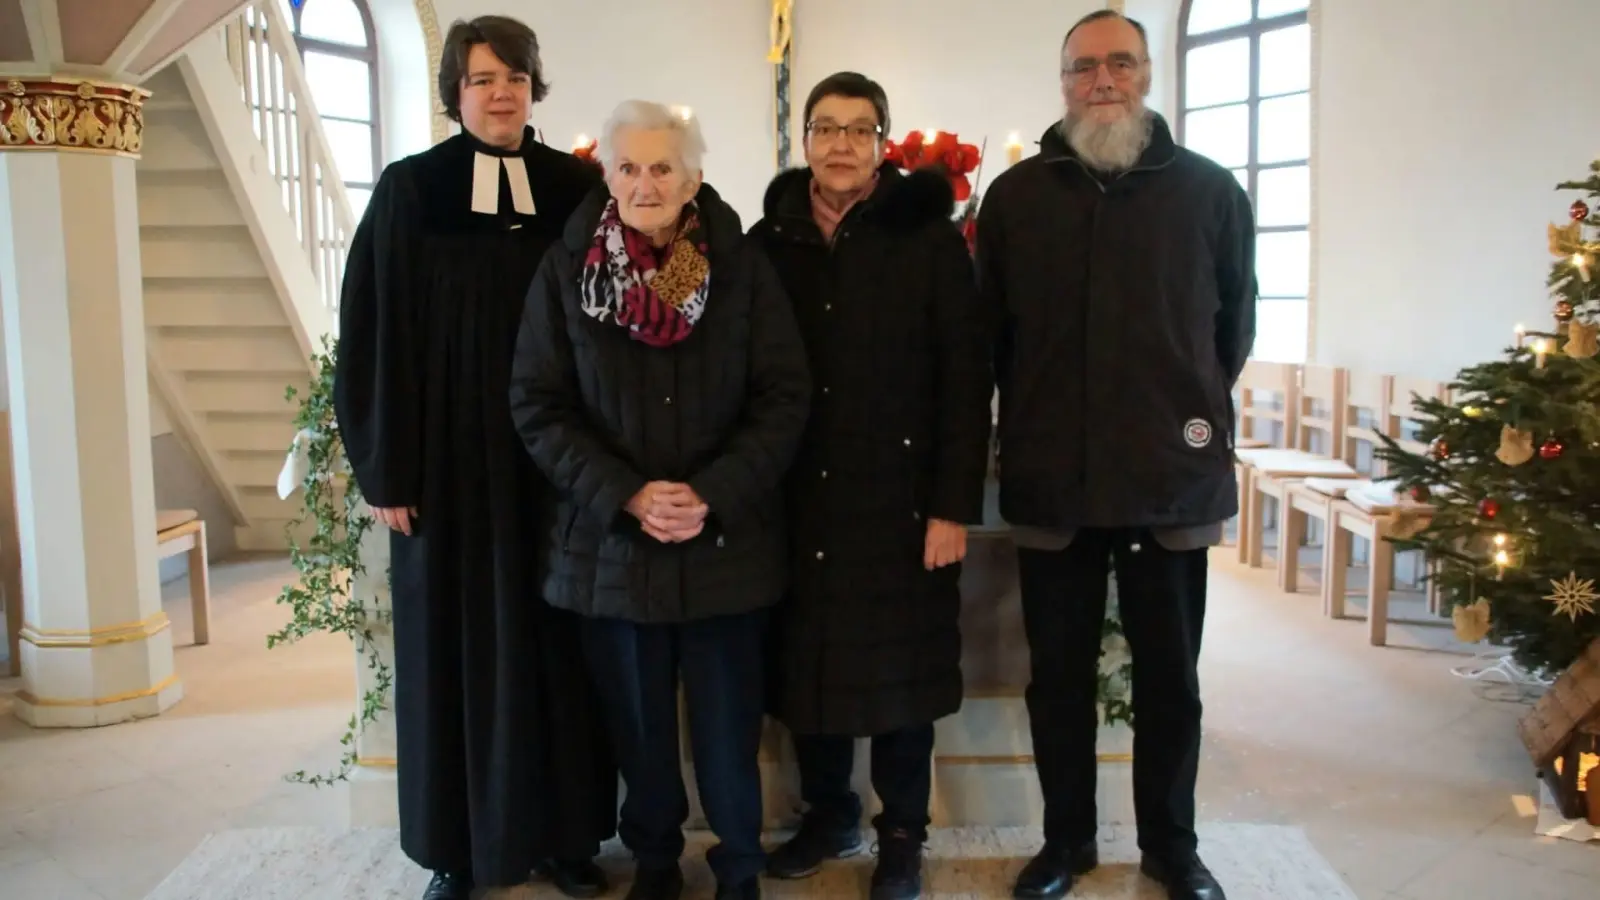 Dankbar für die gemeinsame Zeit (von links): Julia Schwab, Hedwig Treuheit, Wiebke Schmolinsky und Gerhard Zahner. (Foto: Beate Eberlein)